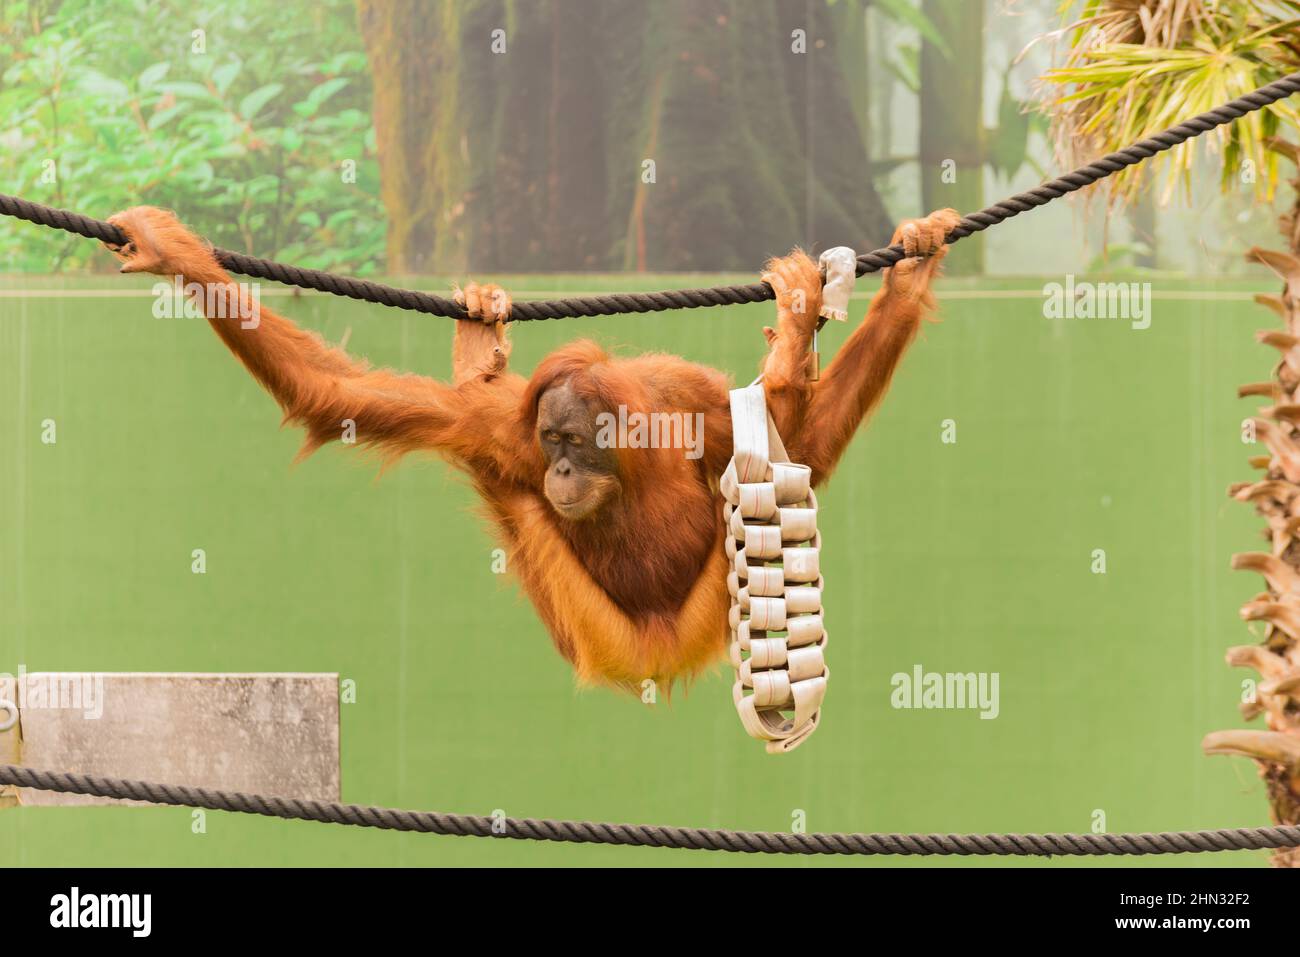 85+ [ Monky Monkey Memes ] To Swing